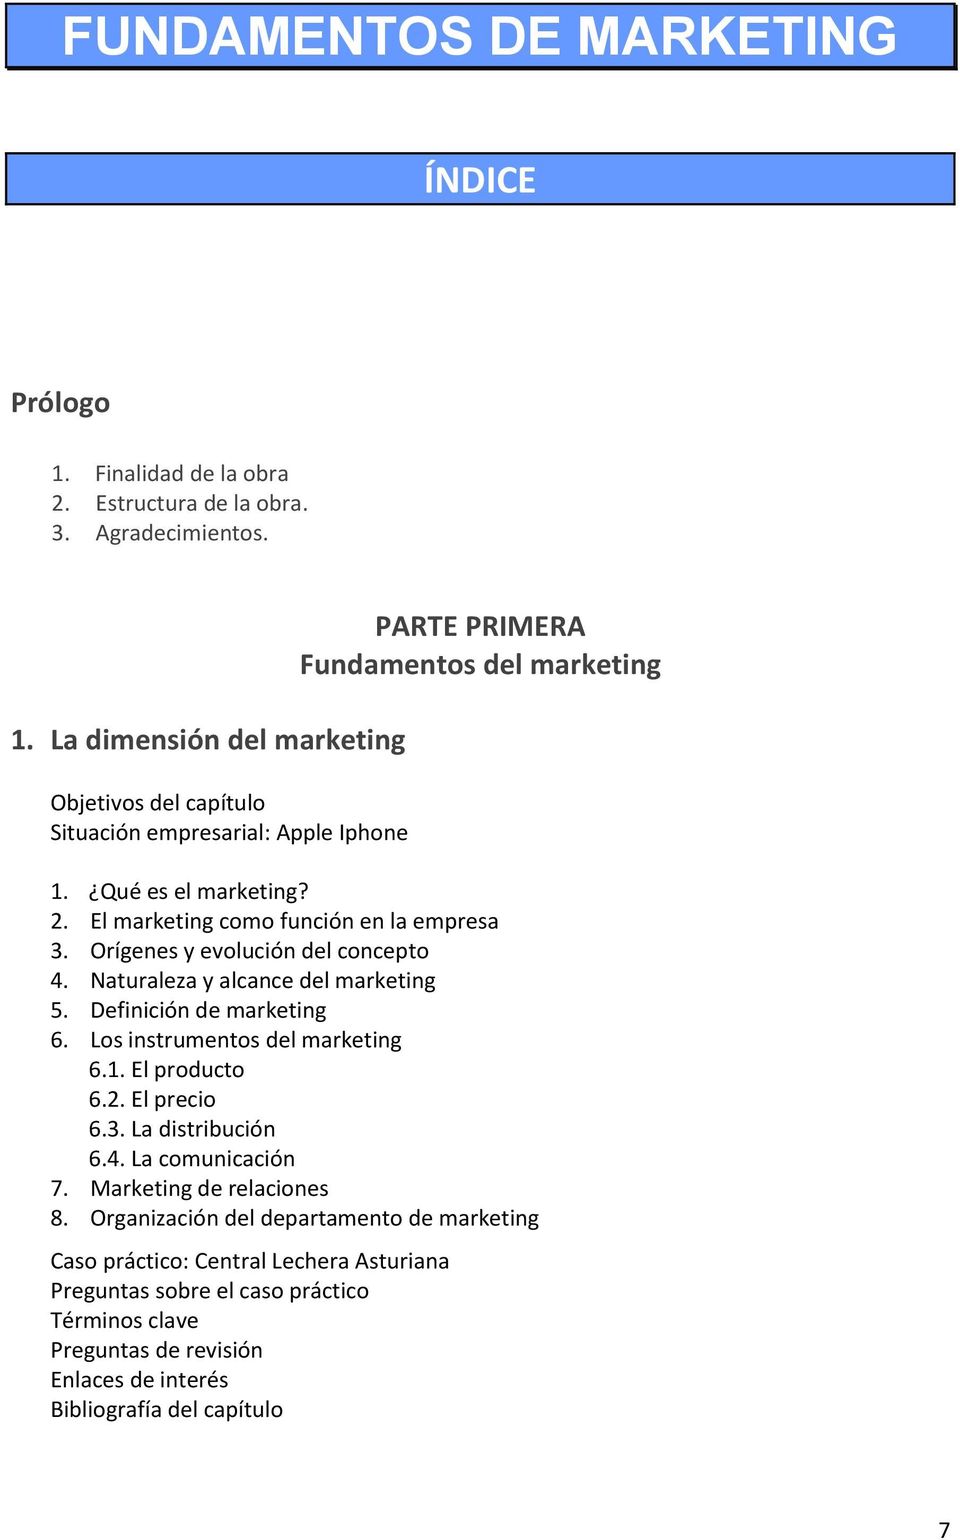 Definición de marketing 6. Los instrumentos del marketing 6.1. El producto 6.2. El precio 6.3. La distribución 6.4. La comunicación 7.